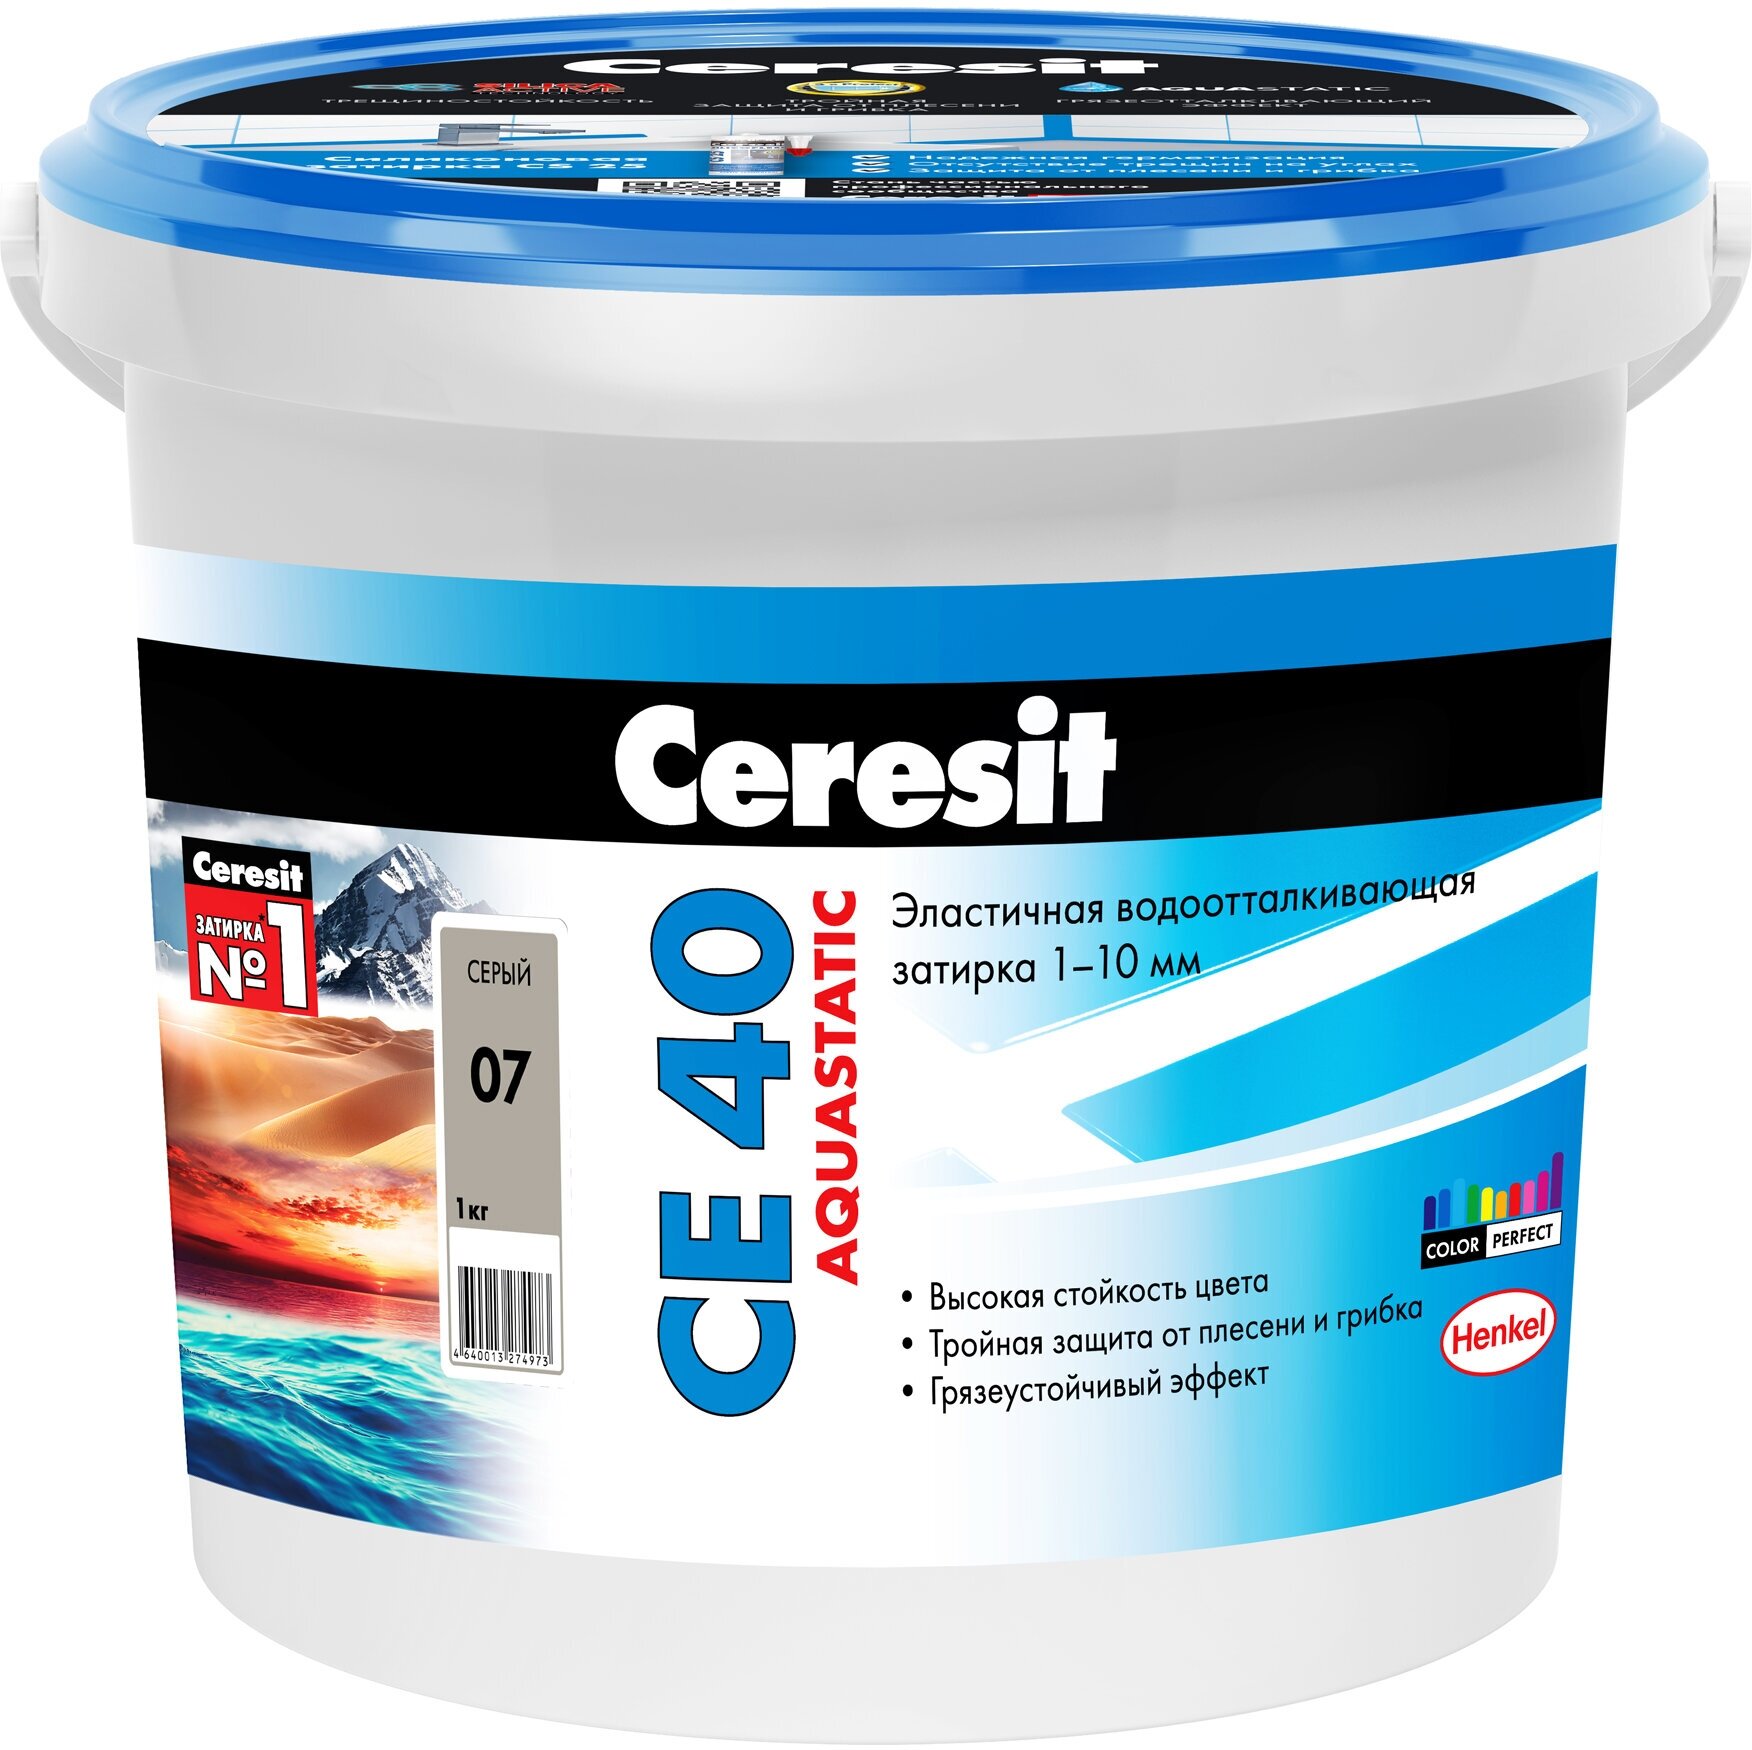 Затирка для плитки Ceresit СЕ 40 Aquastatic (1кг) серый 07